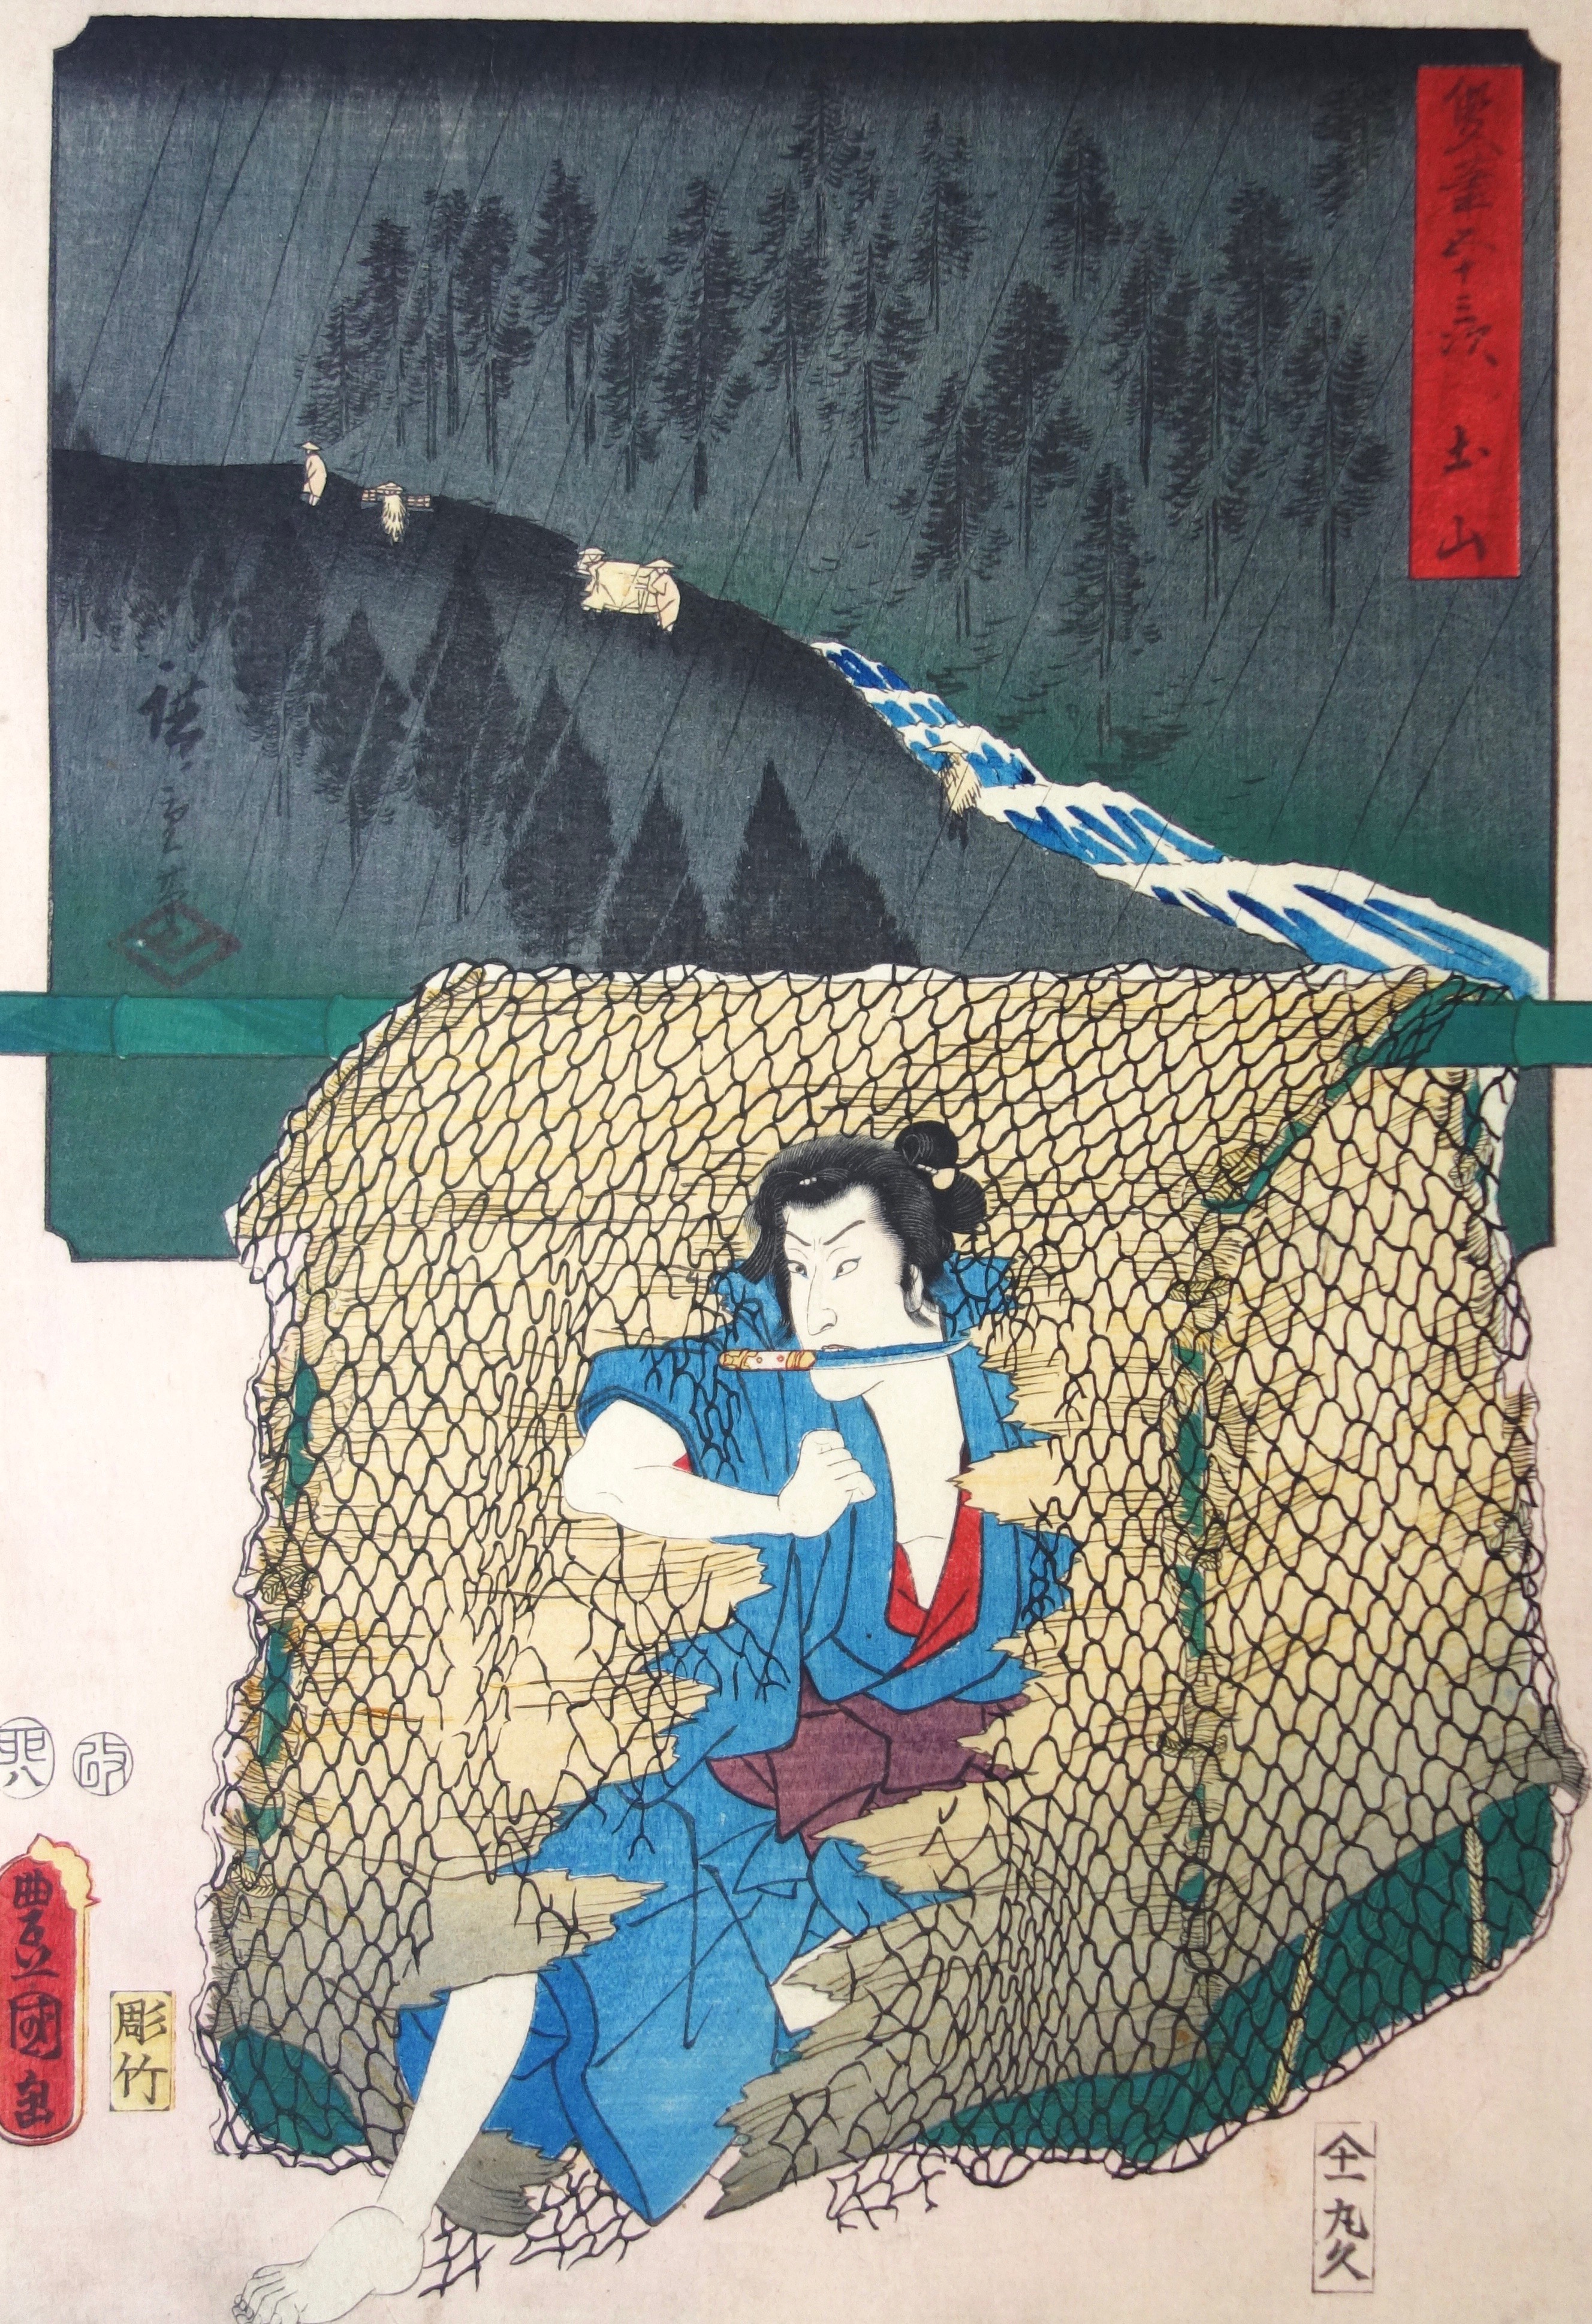 KUNISADA Utagawa, dit TOYOKUNI III et HIROSHIGE Ando